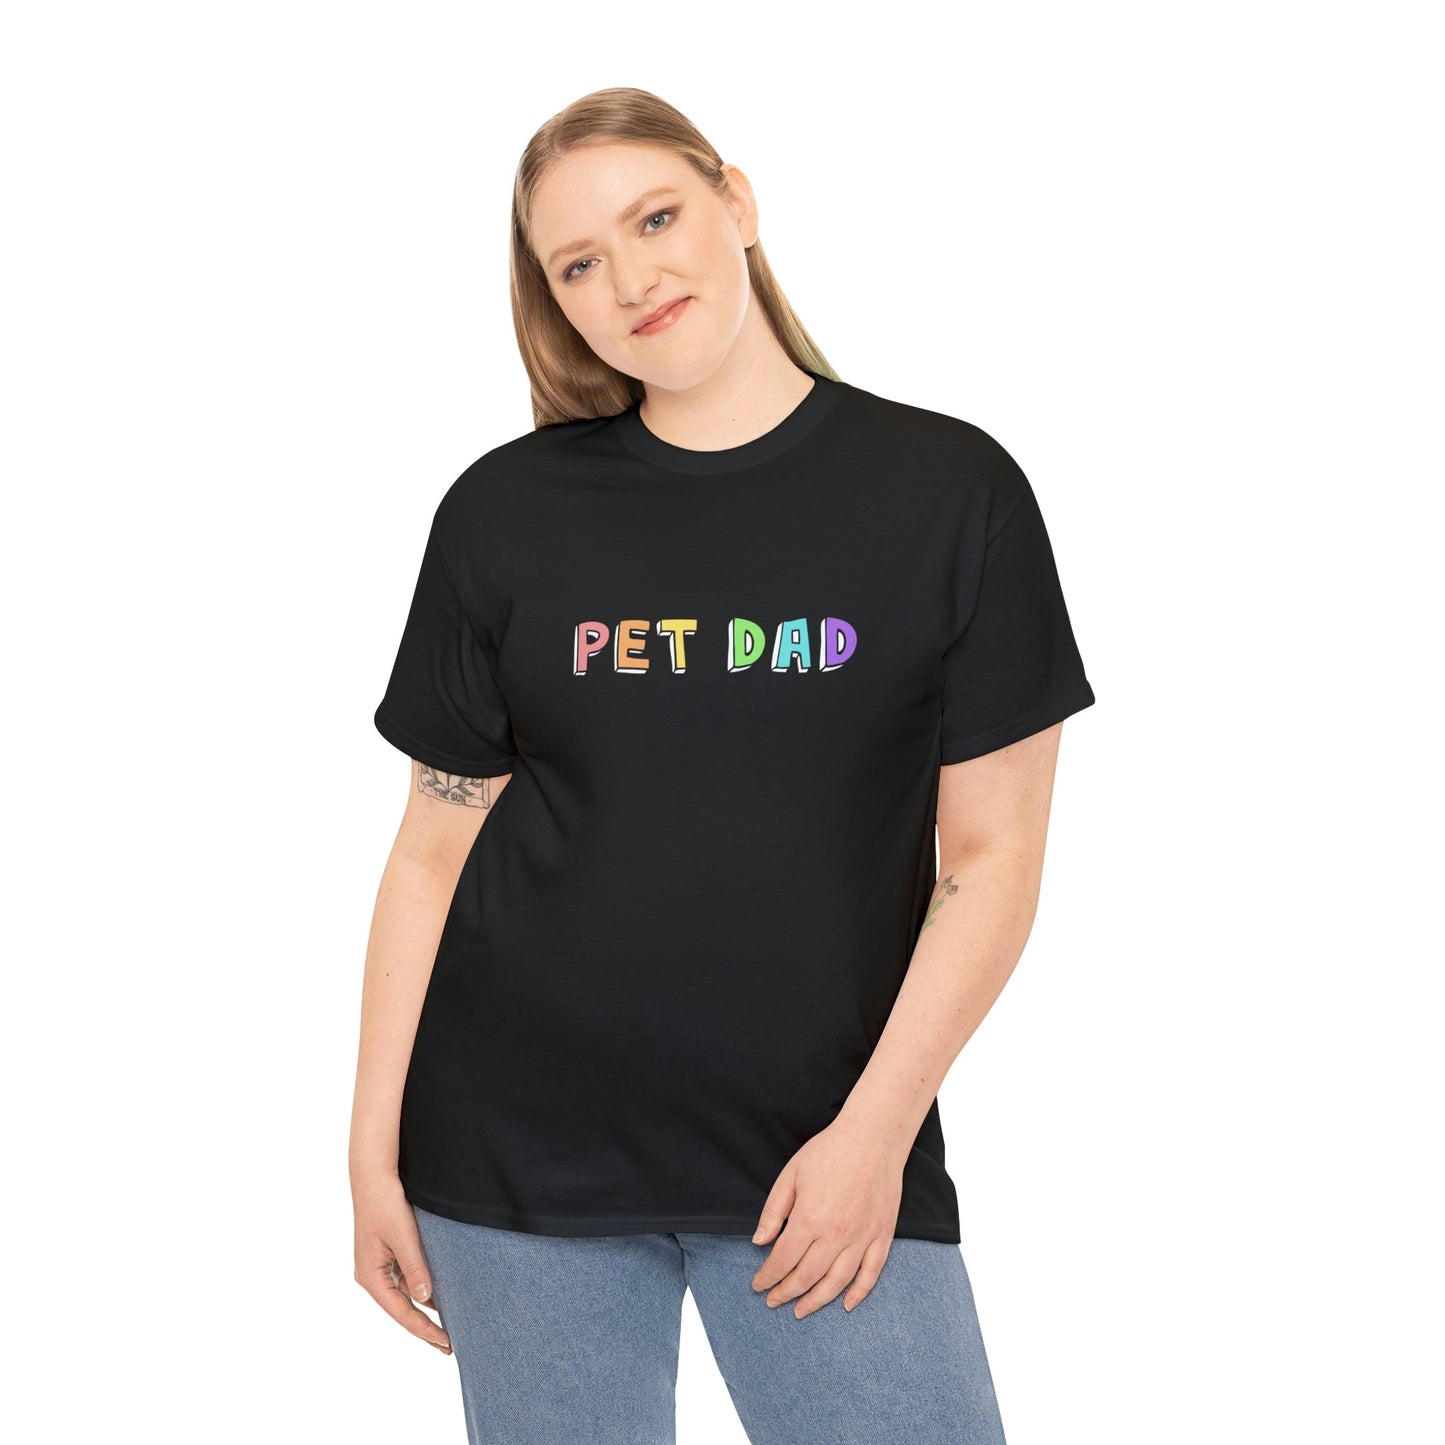 Pet Dad | Text Tees - Detezi Designs-12347238185322172777